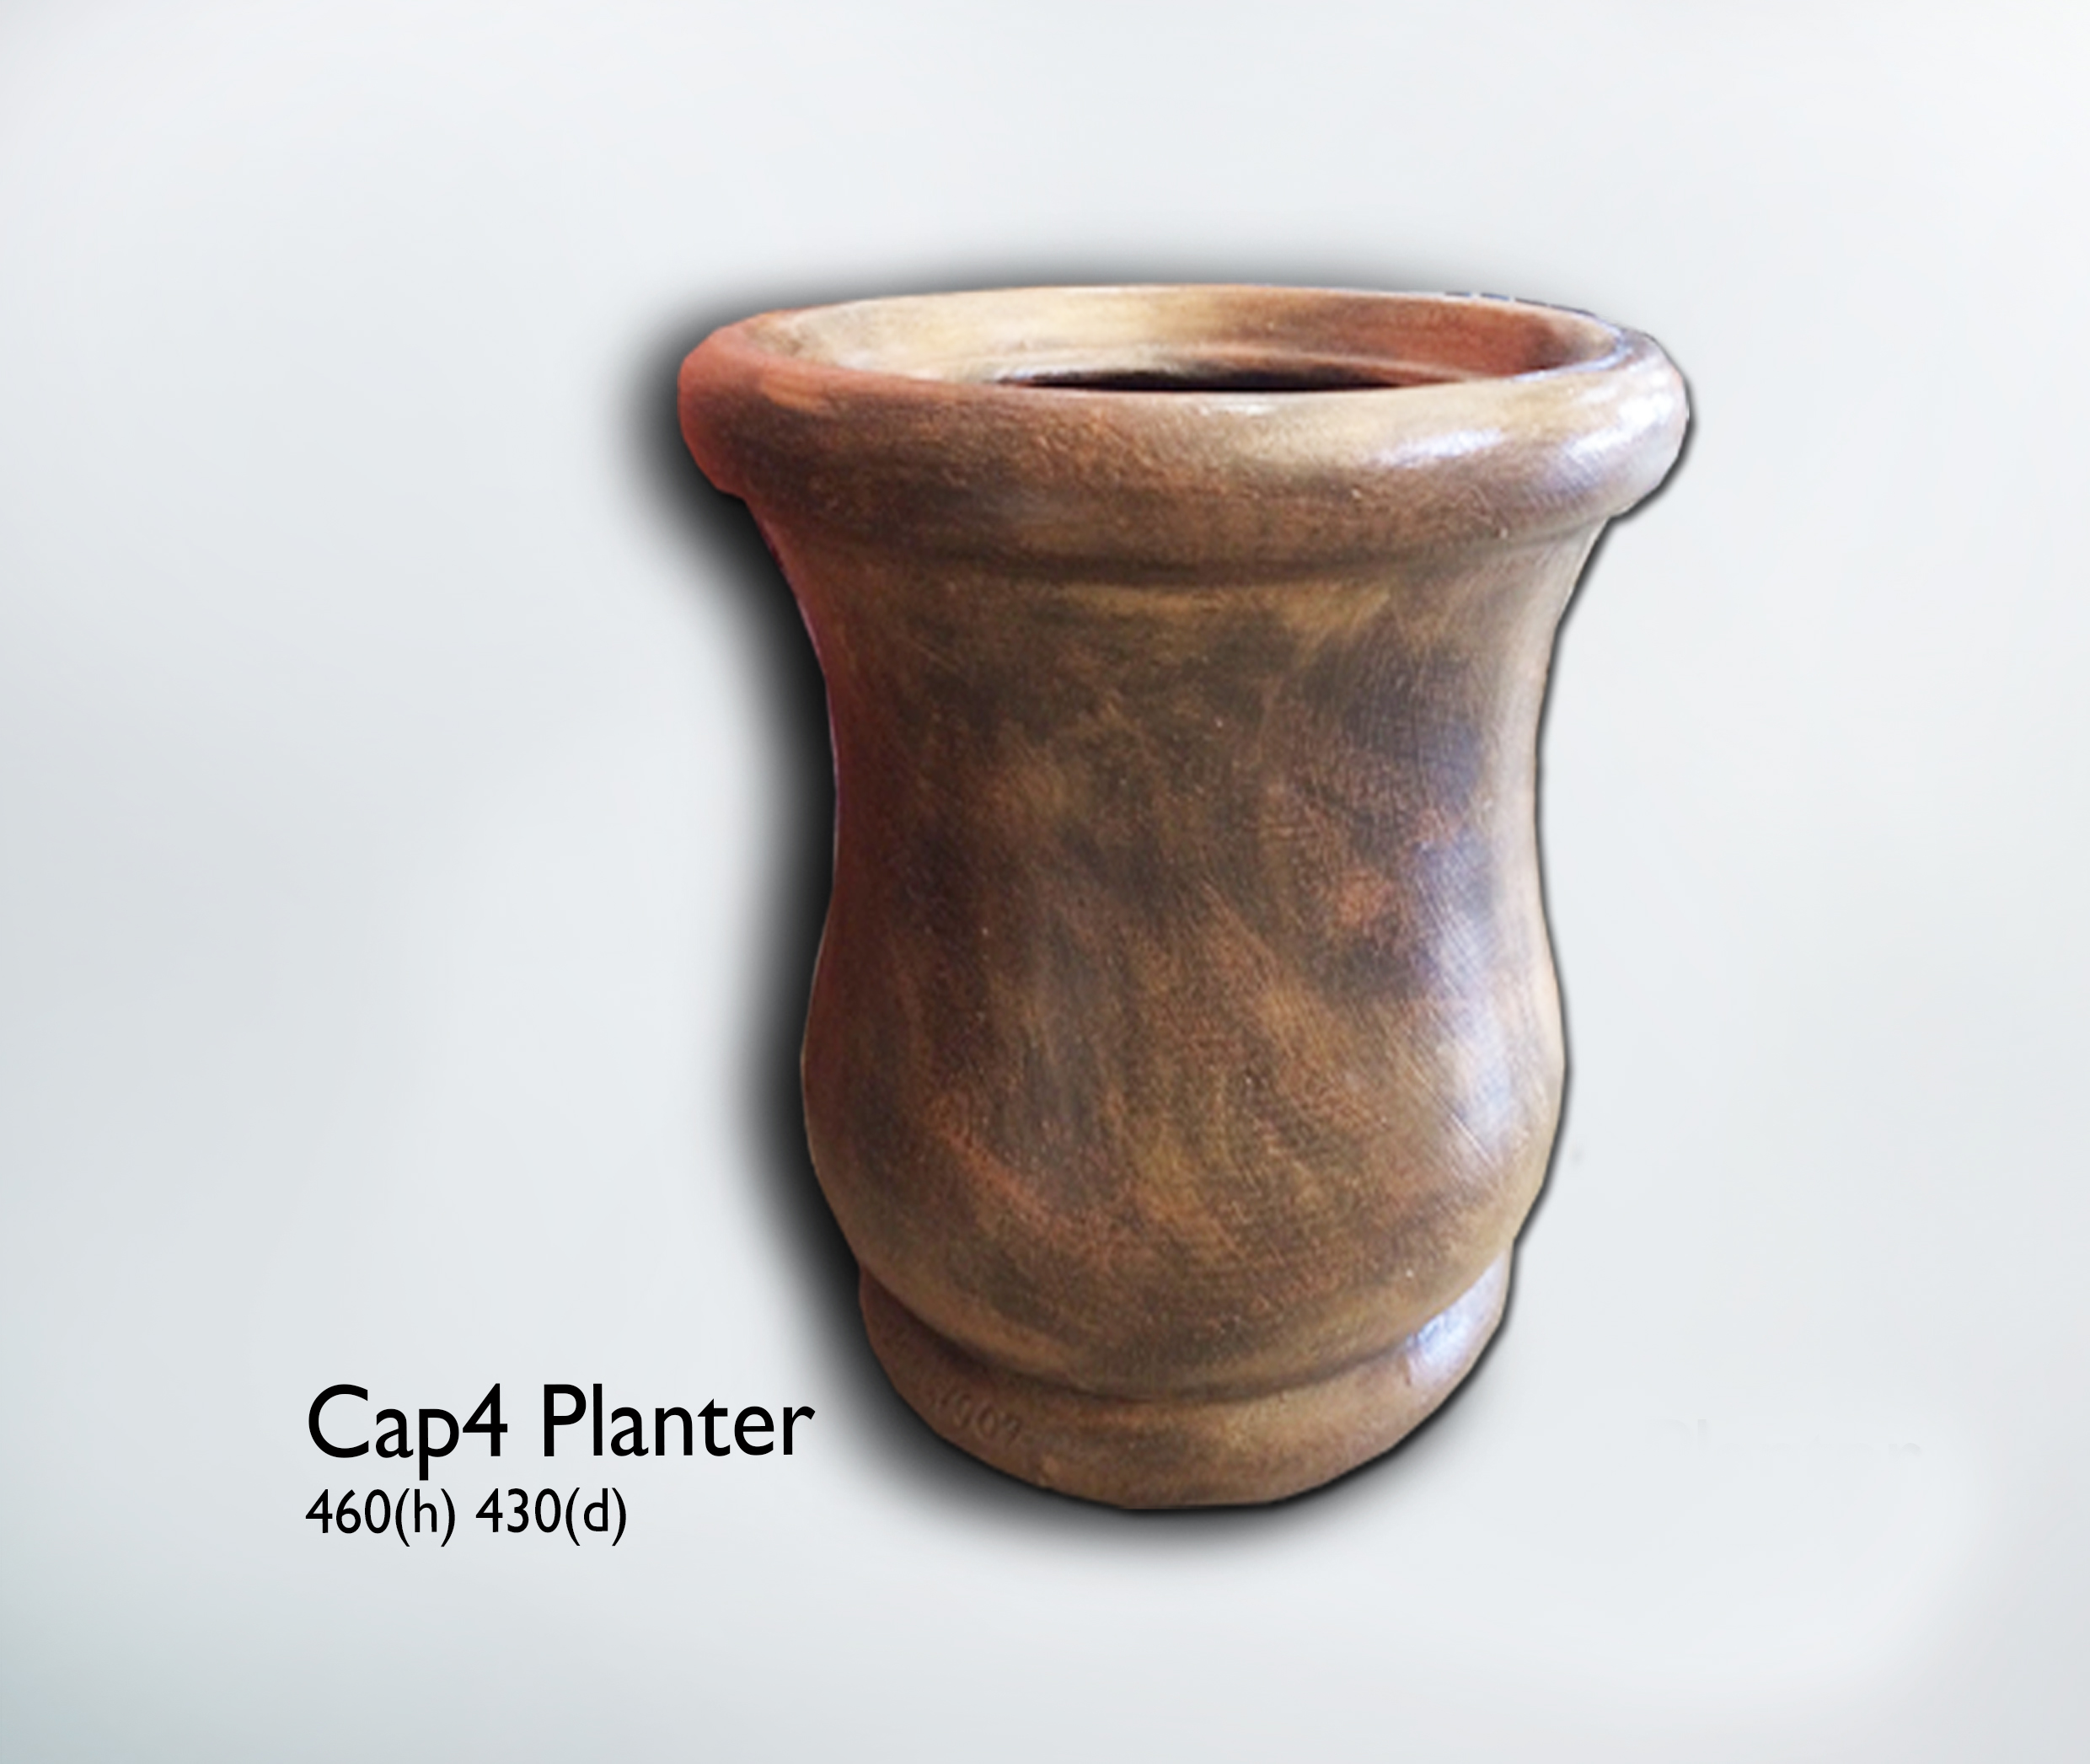 Cap4 Planter